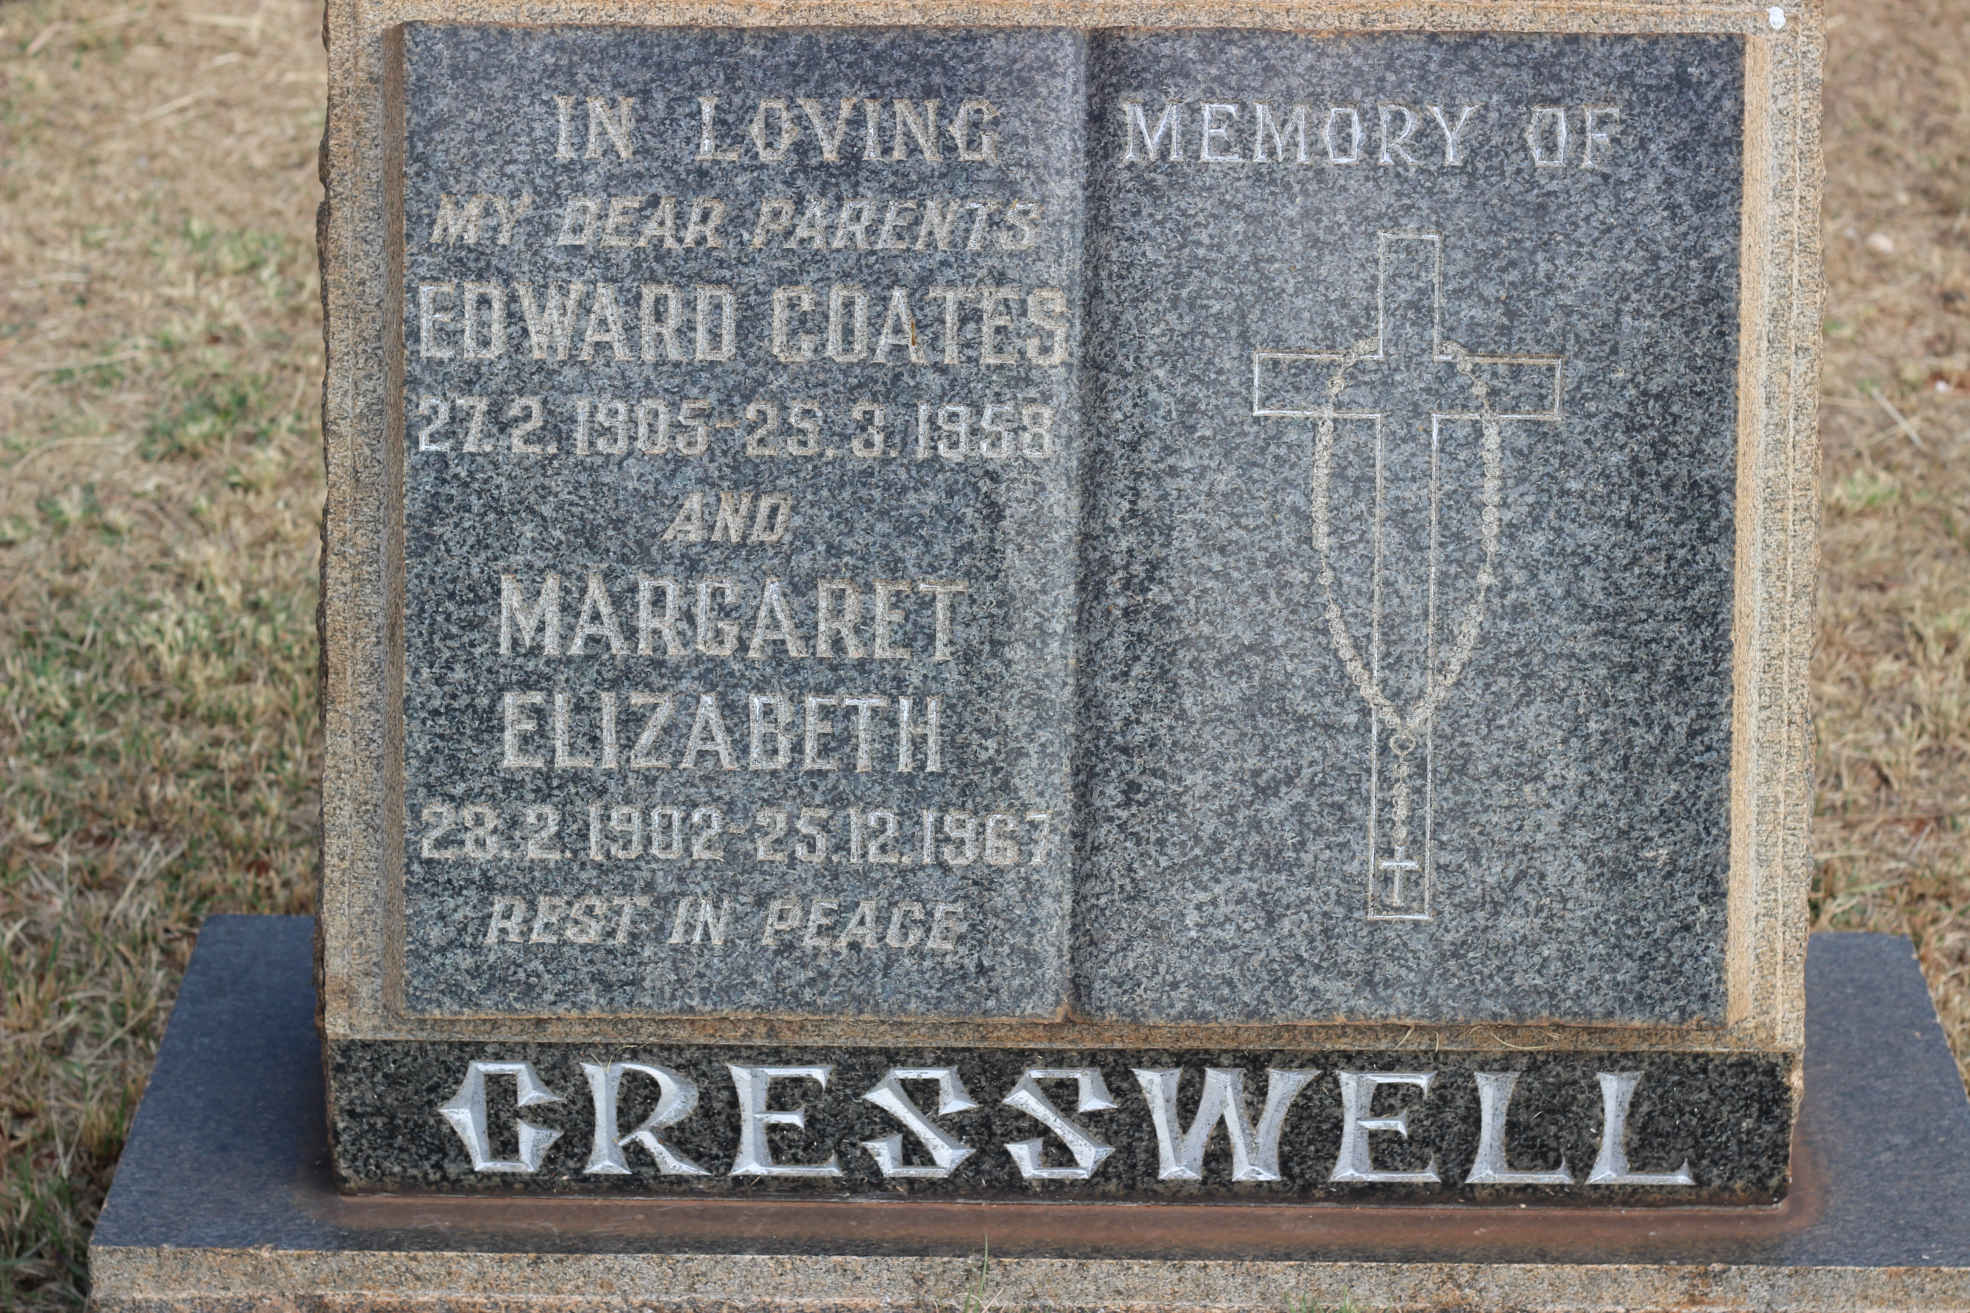 CRESSWELL Edward Coates 1905-1958 & Margaret Elizabeth 1902-1967